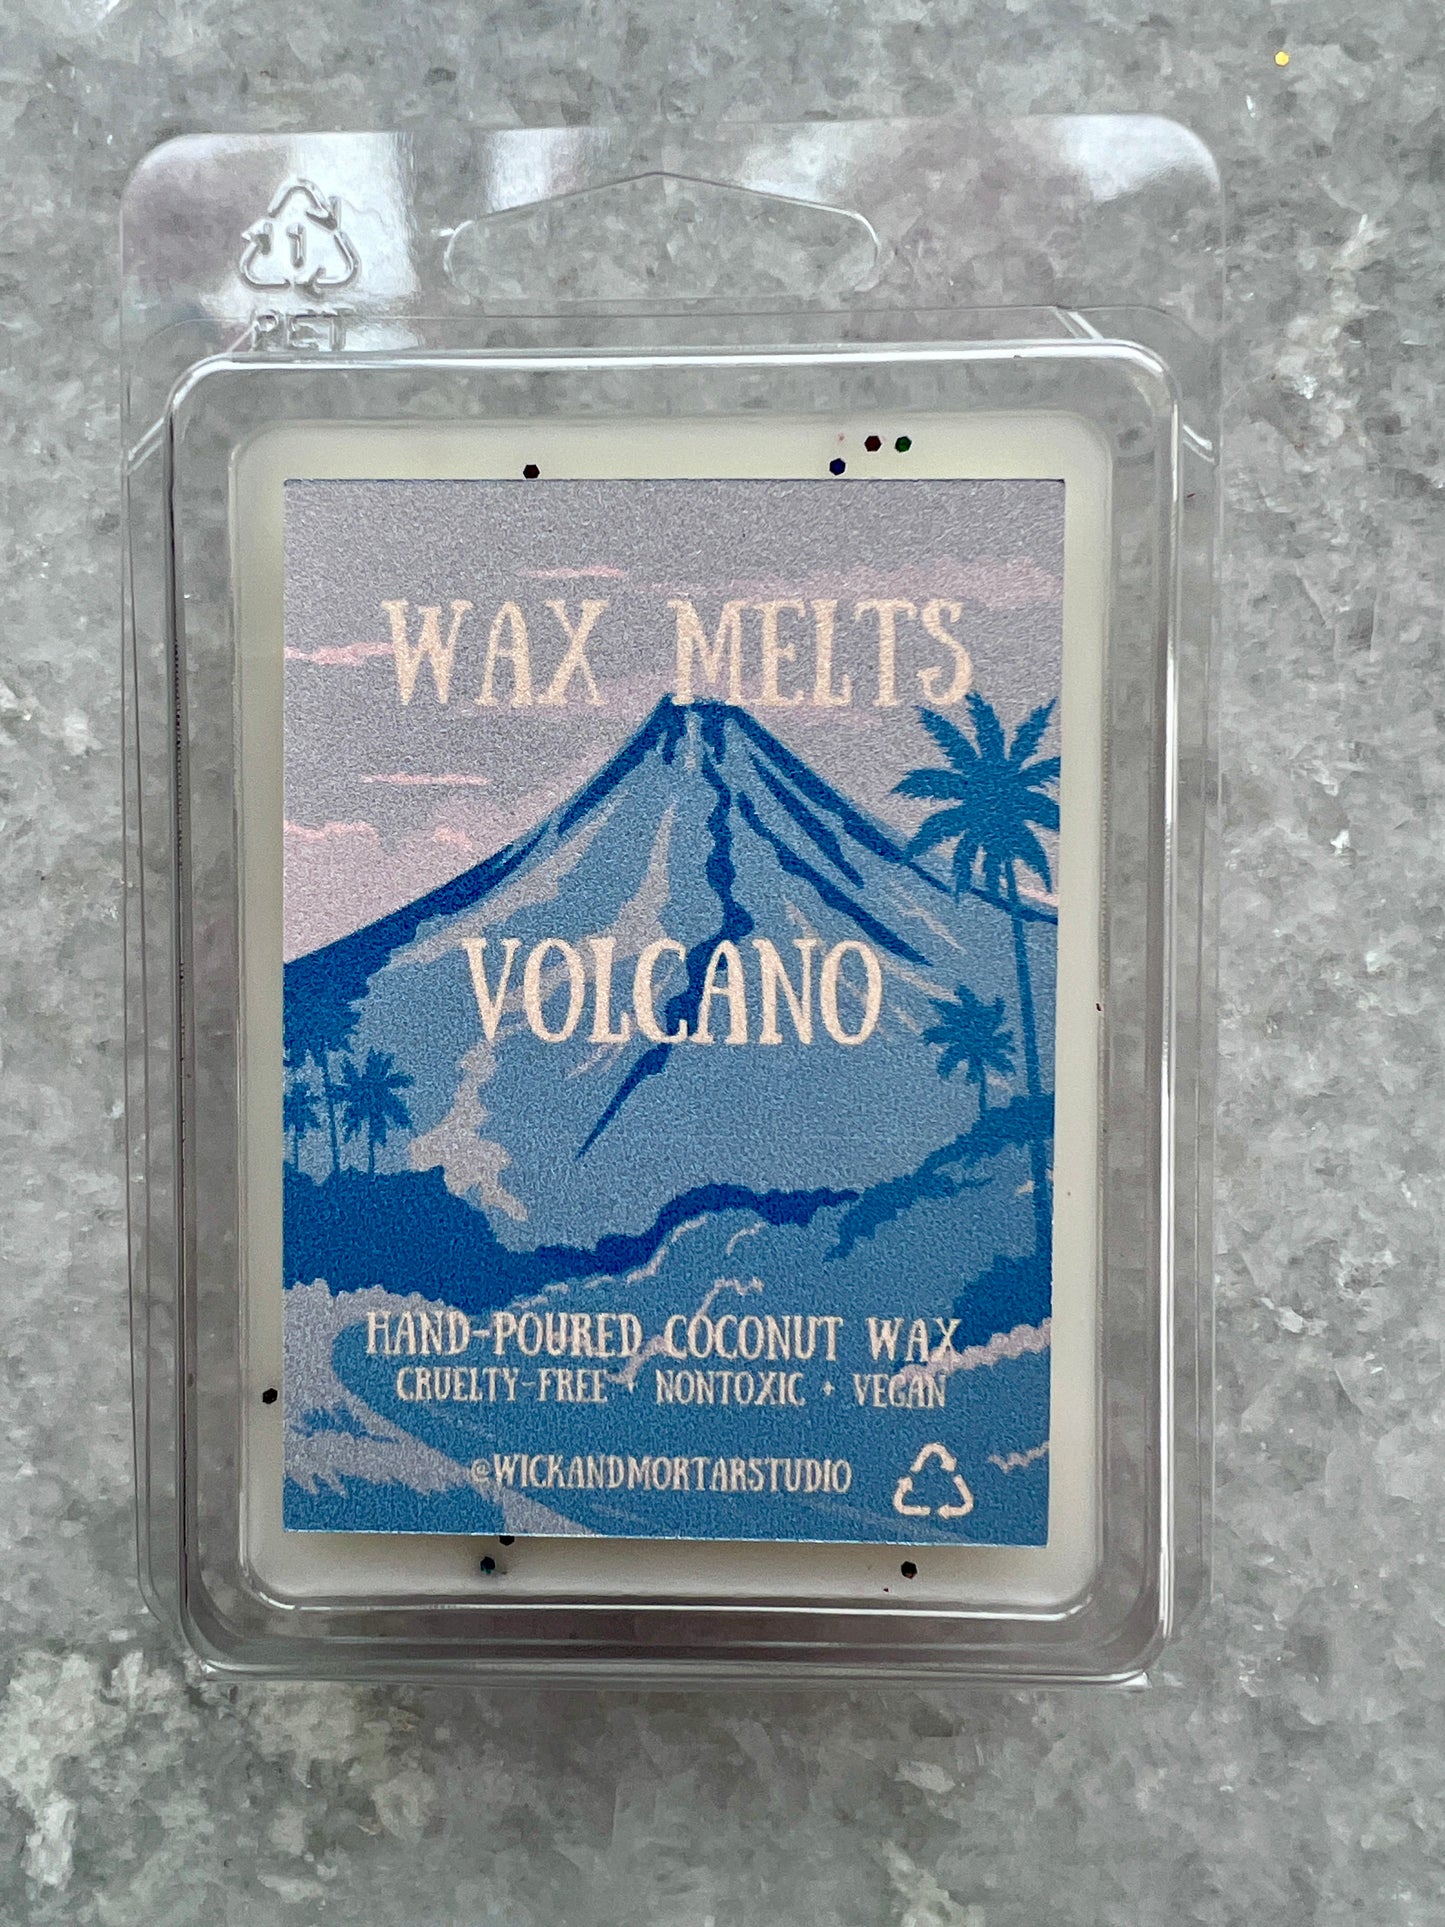 Volcano Wax Melts